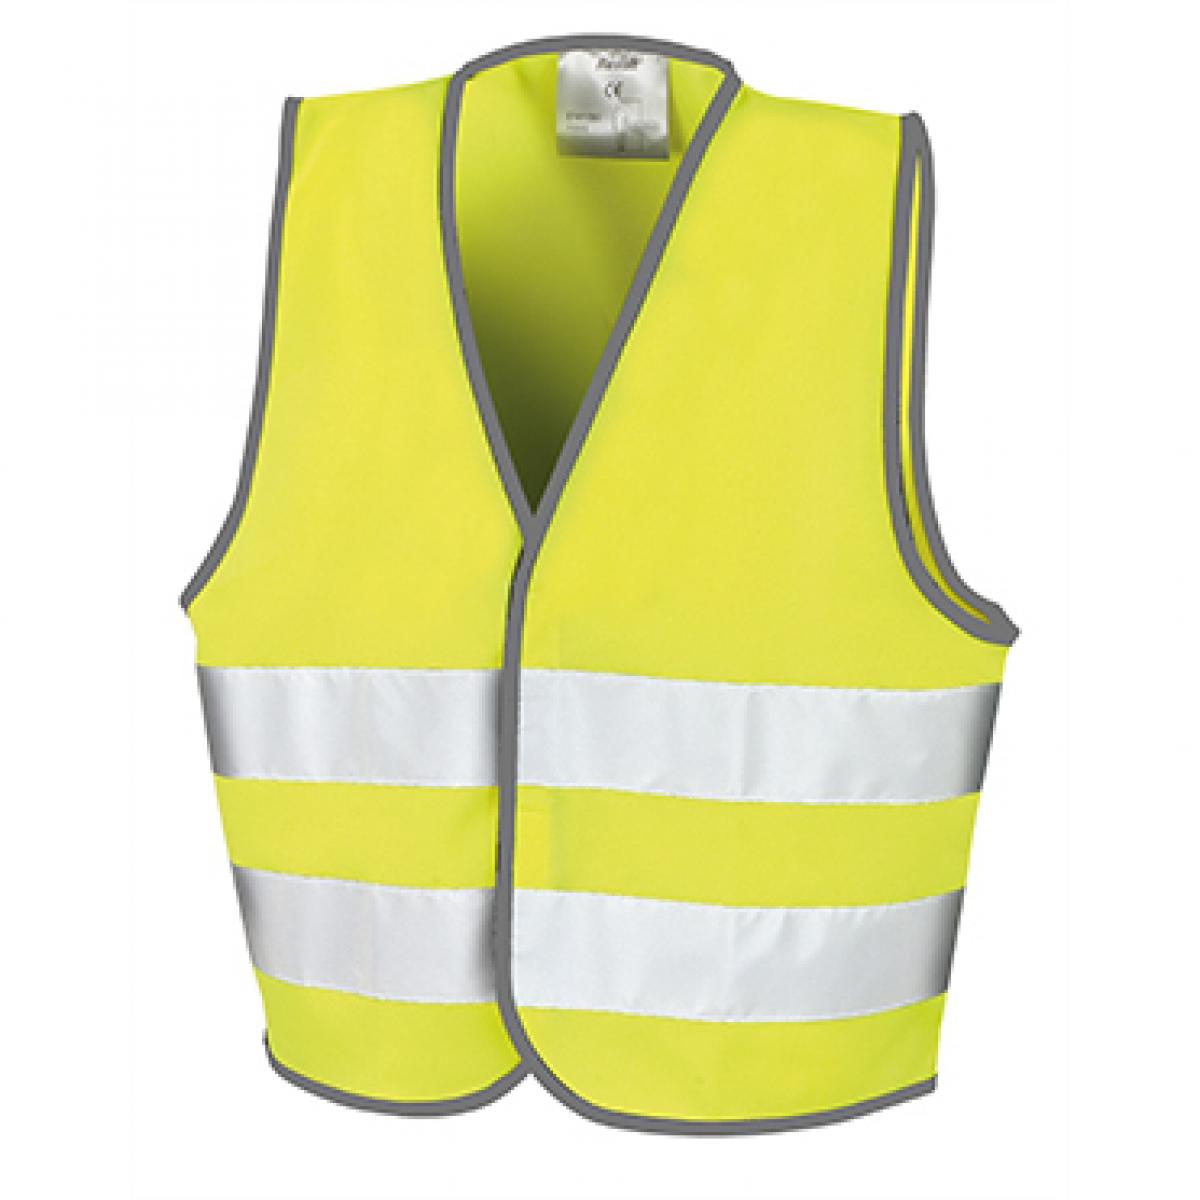 Hersteller: Result Core Herstellernummer: R200J Artikelbezeichnung: Kinder Sicherheitsweste - Junior Safety Vest Farbe: Fluorescent Yellow